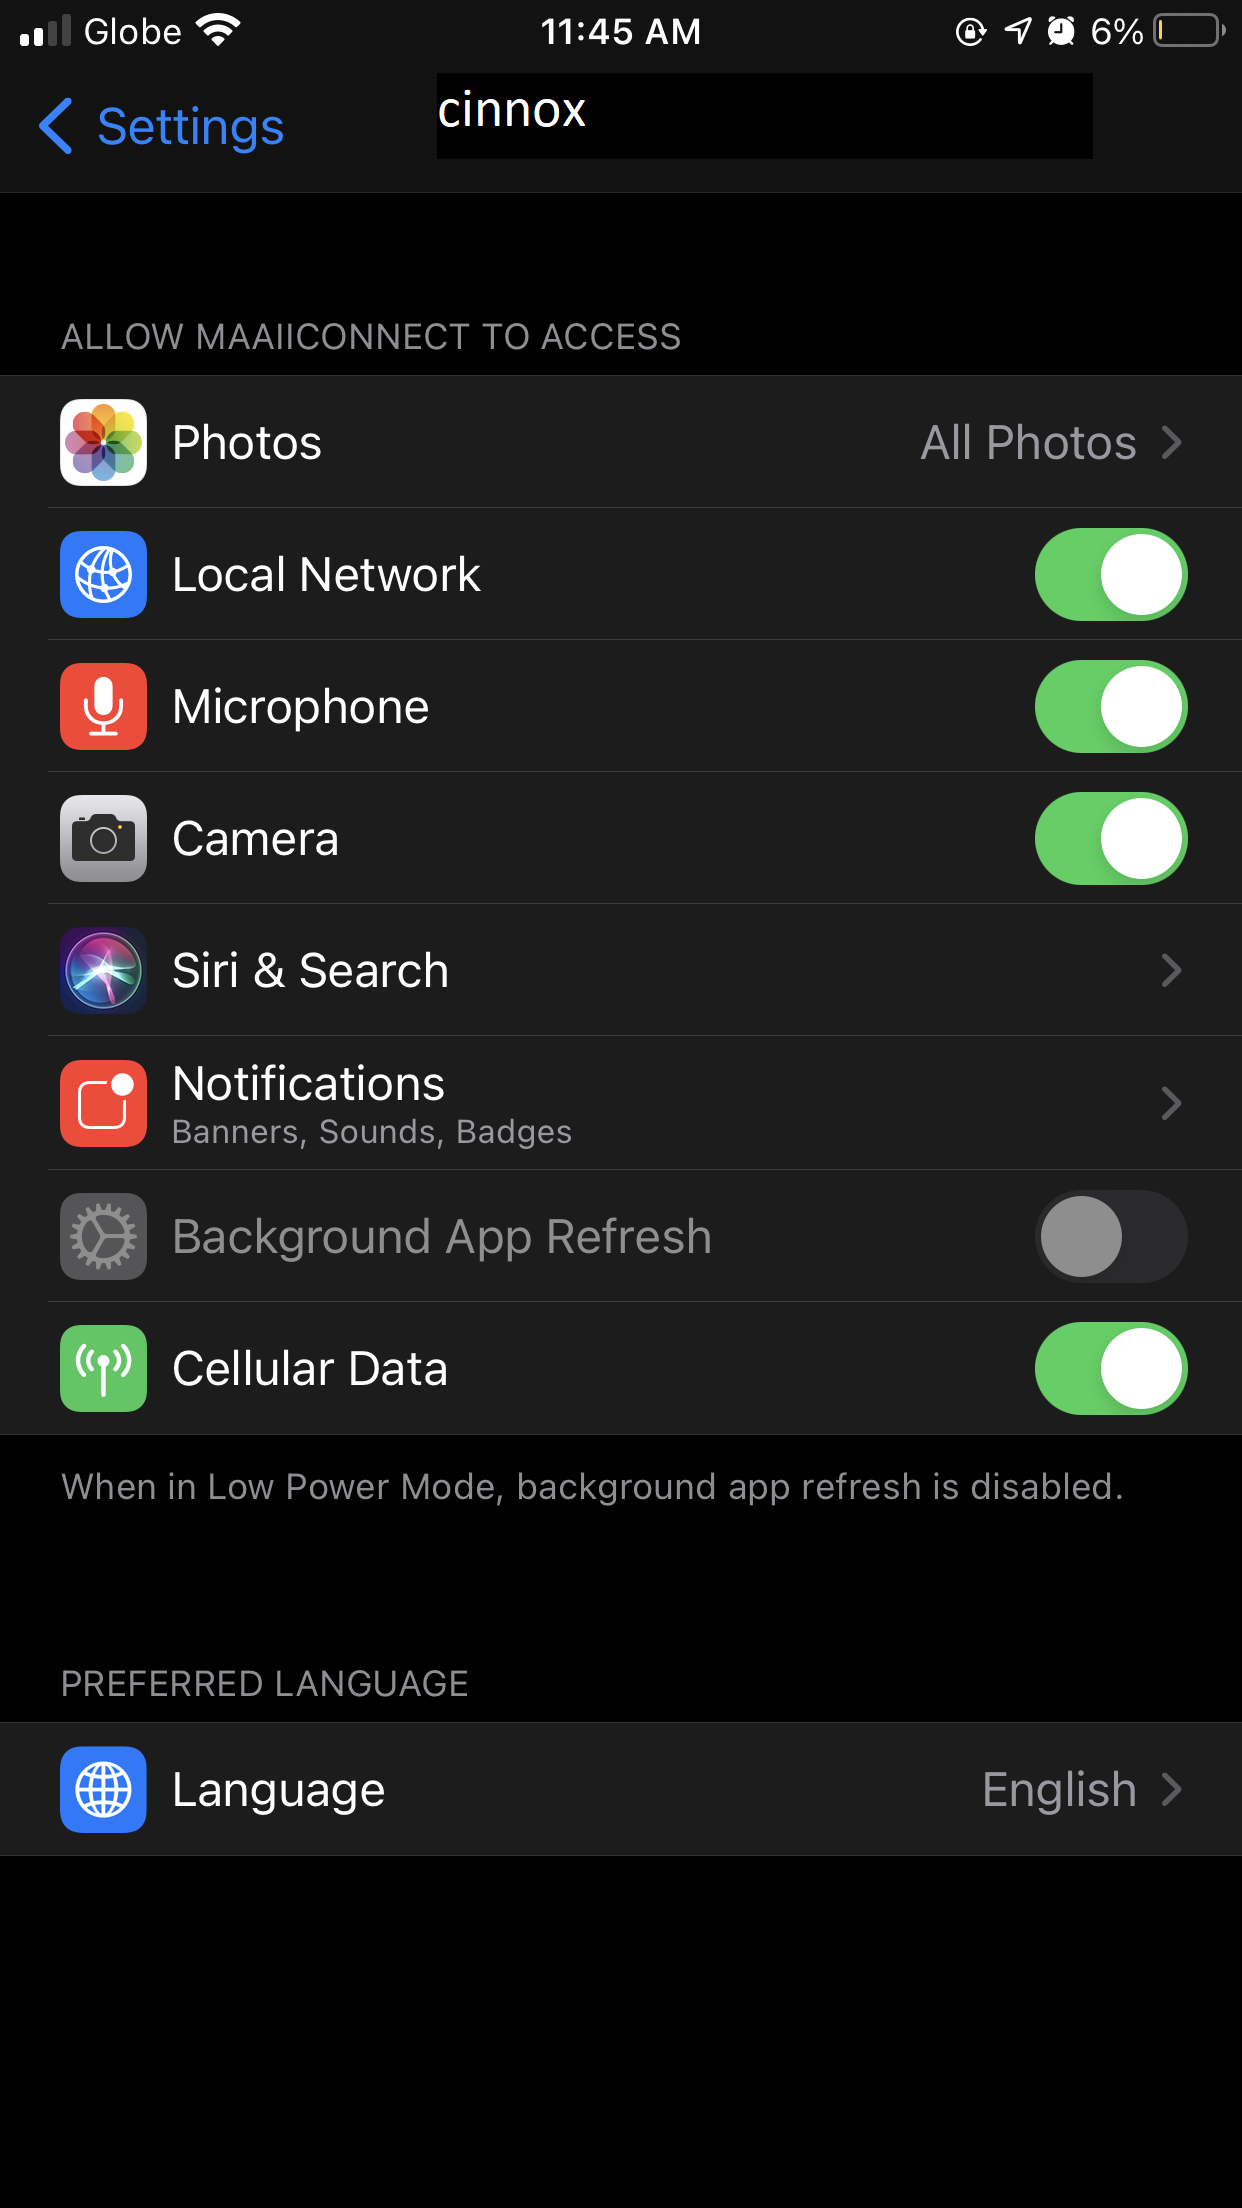 CINNOX App iOS settings